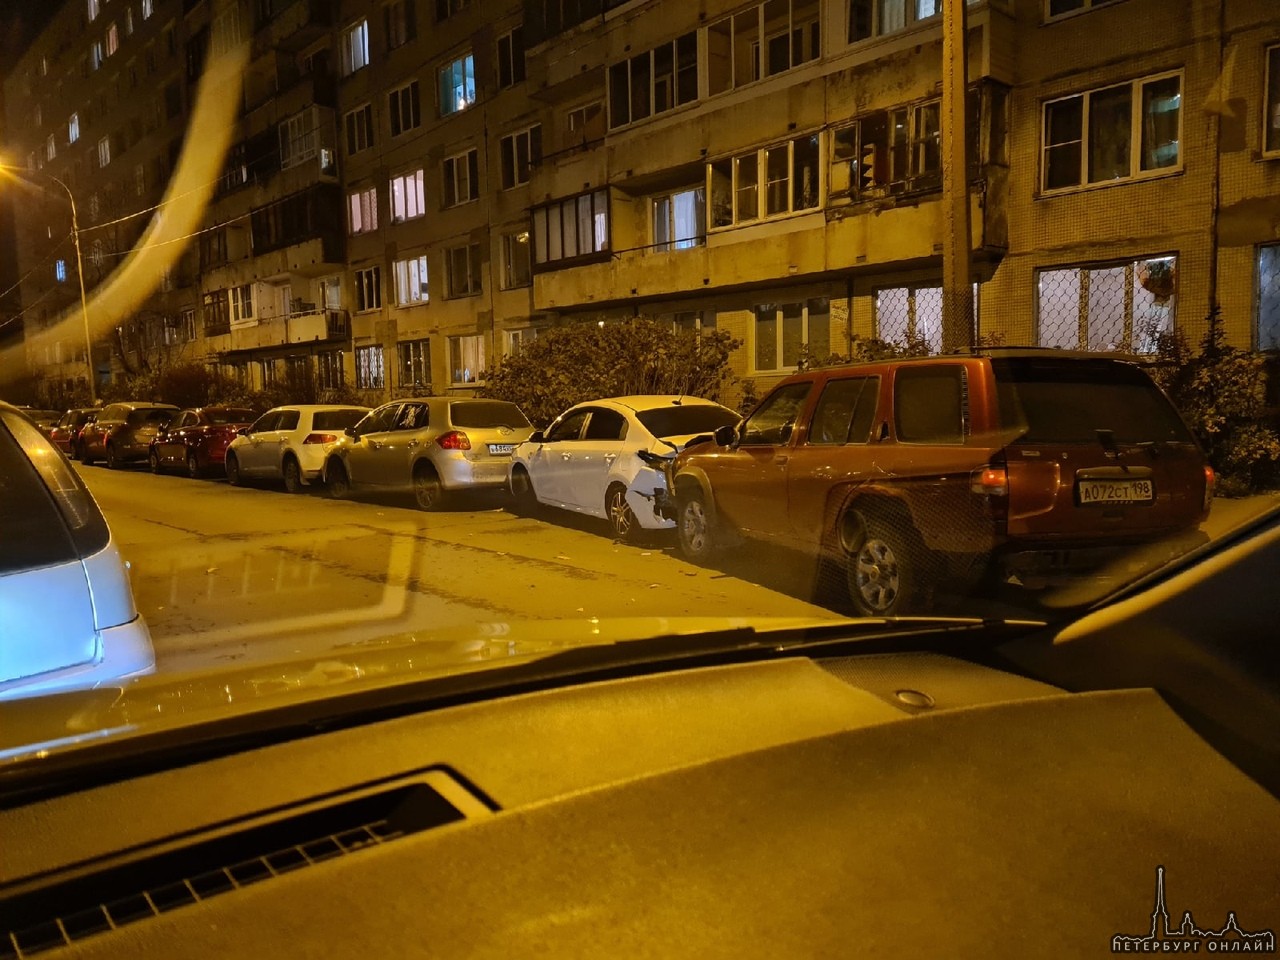 Водитель красного внедорожника устроил кк-комбо парковку в 3 машины на Пловдивской 2. Сейчас подъеха...